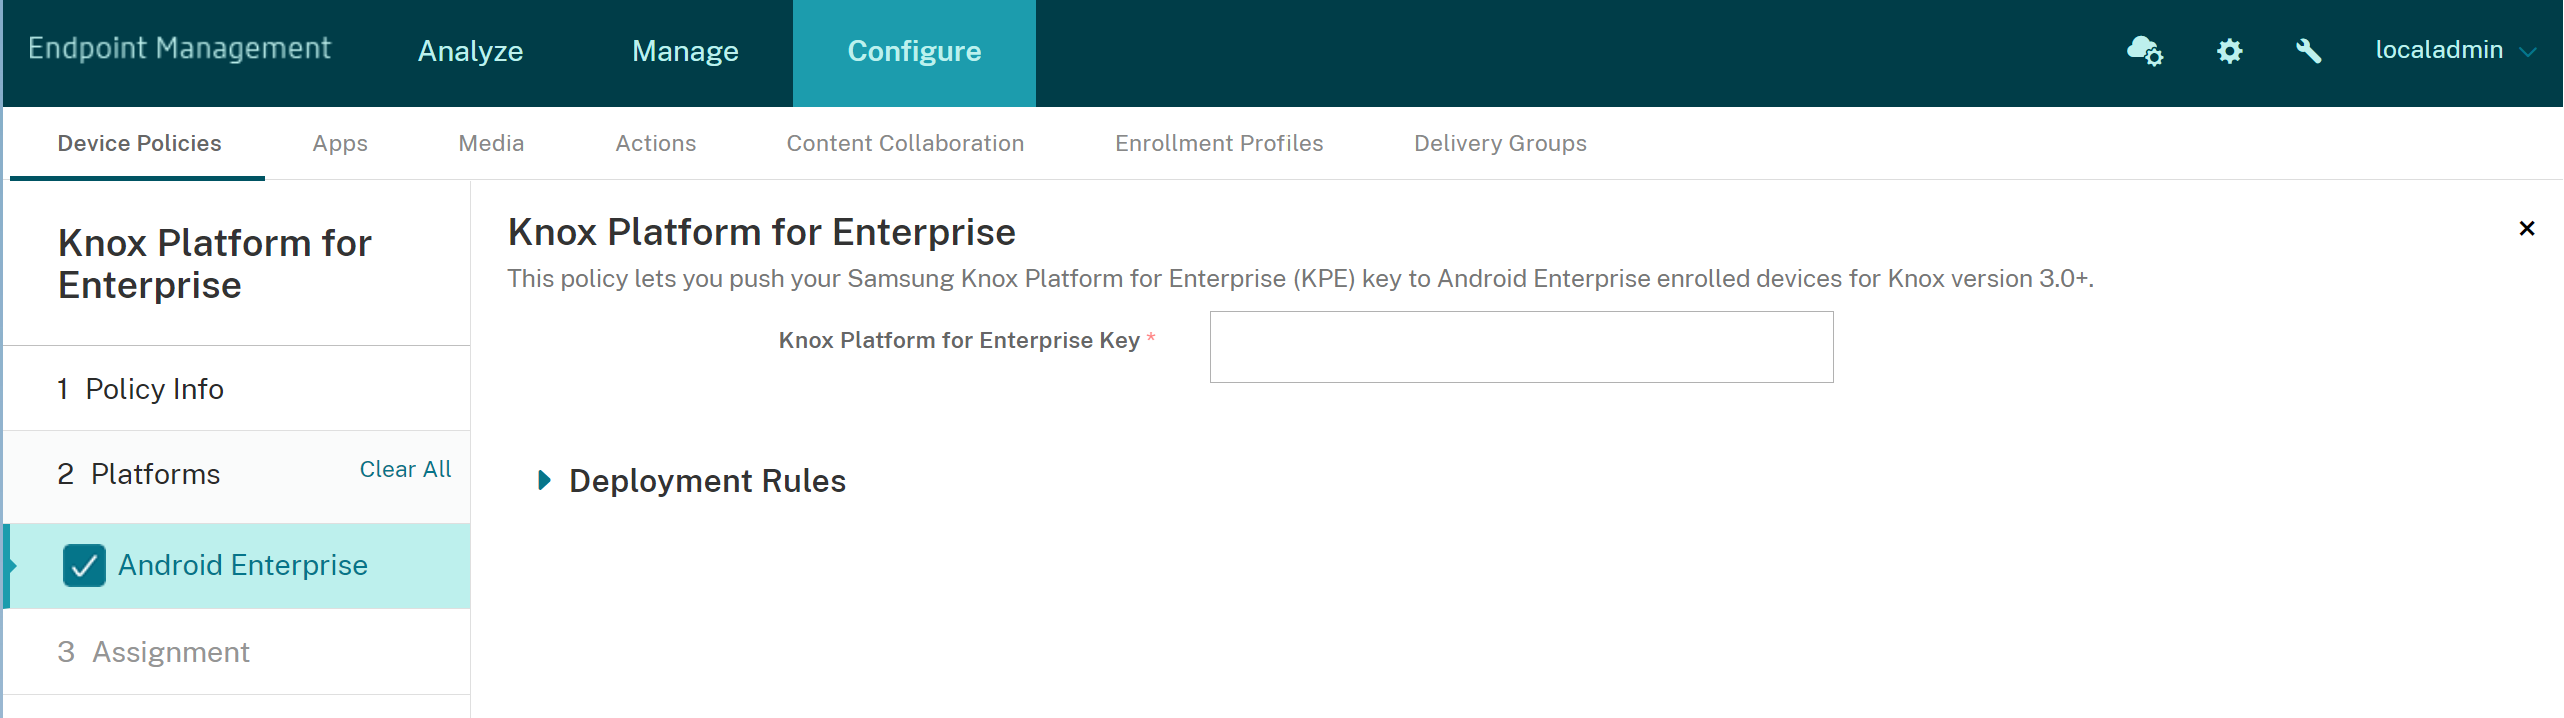 Abbildung: Anzeige der Geräterichtlinie "Knox Platform for Enterprise" für Android Enterprise